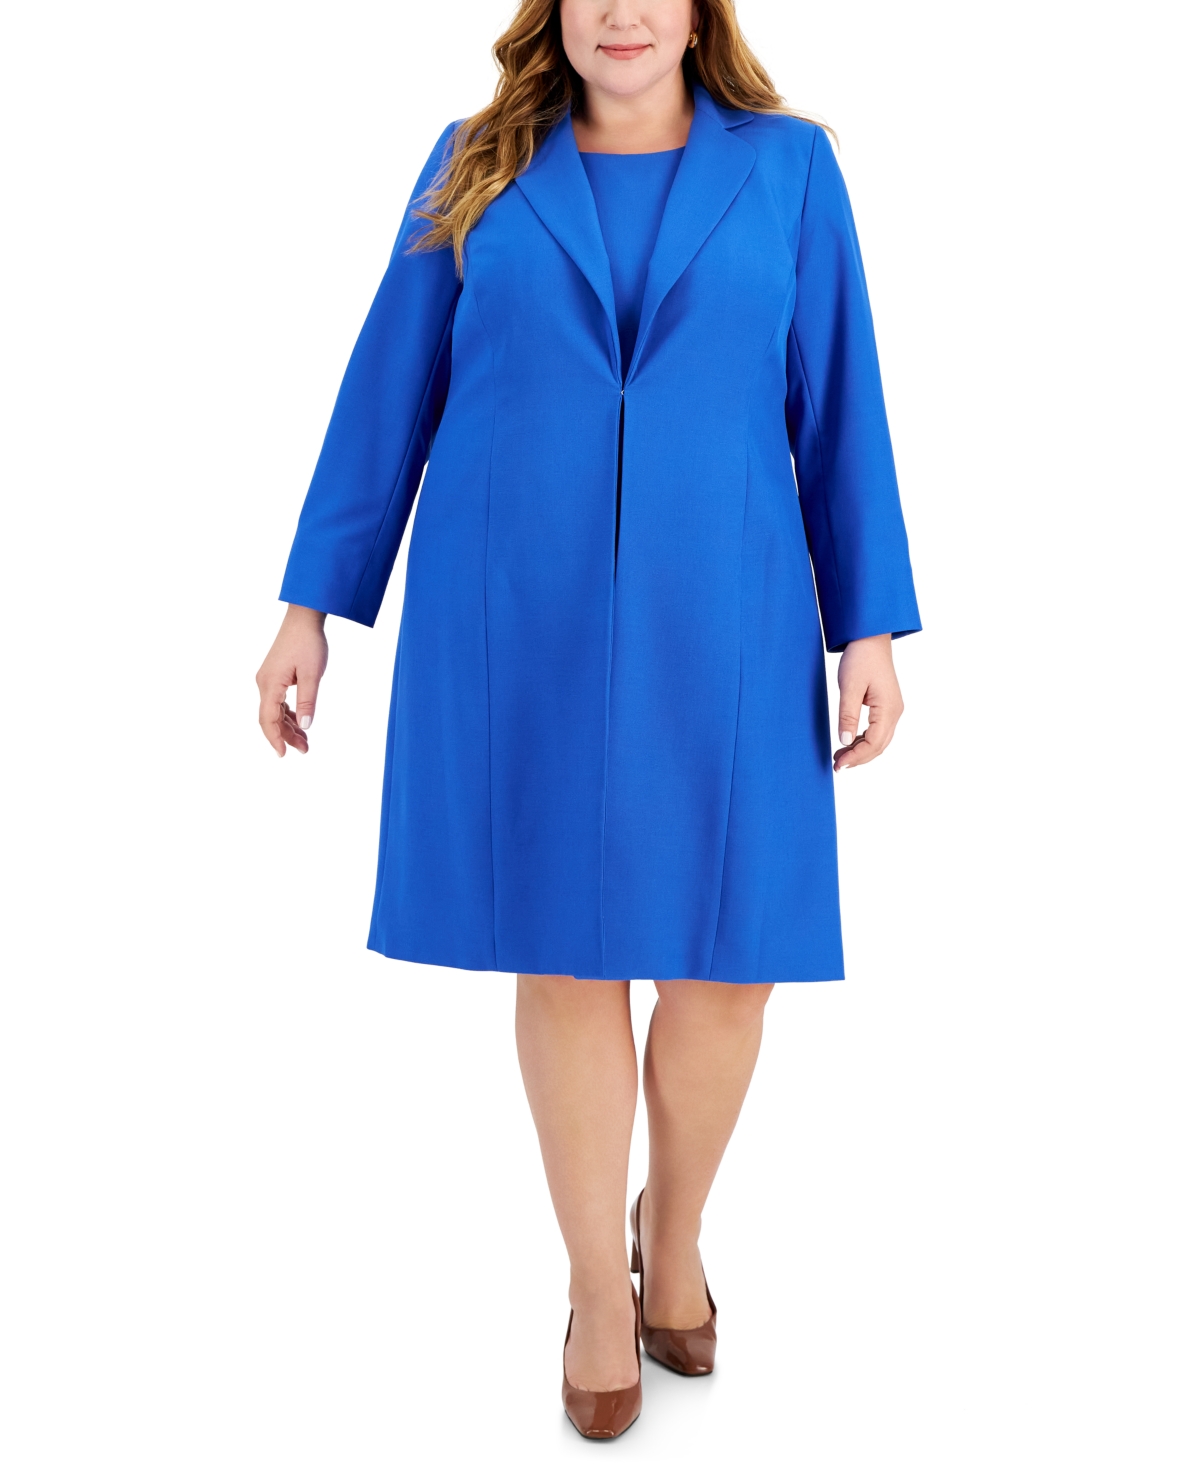 Le Suit Plus Size Topper Jacket & Sheath Dress Suit In Cabana Blue